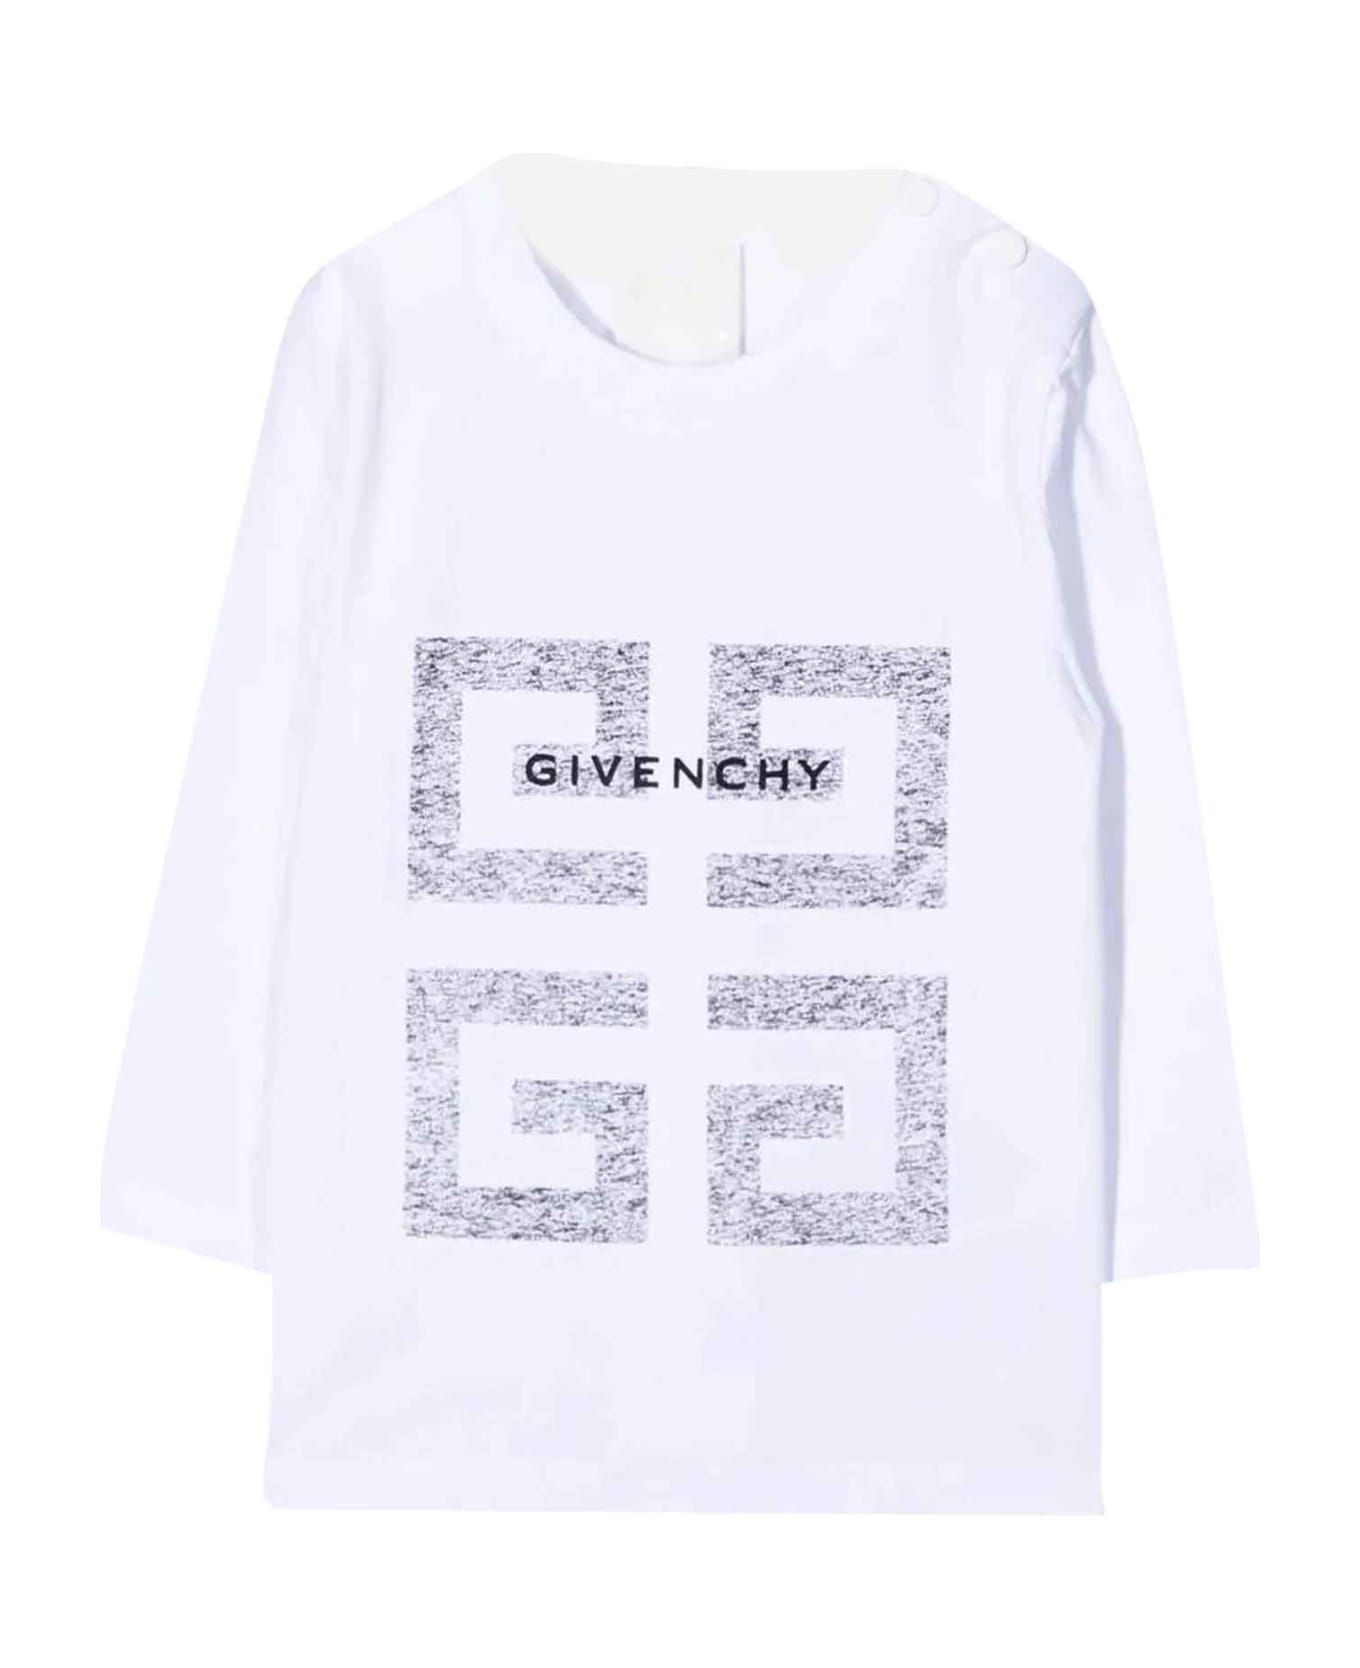 Givenchy White T-shirt Baby Unisex - Bianco